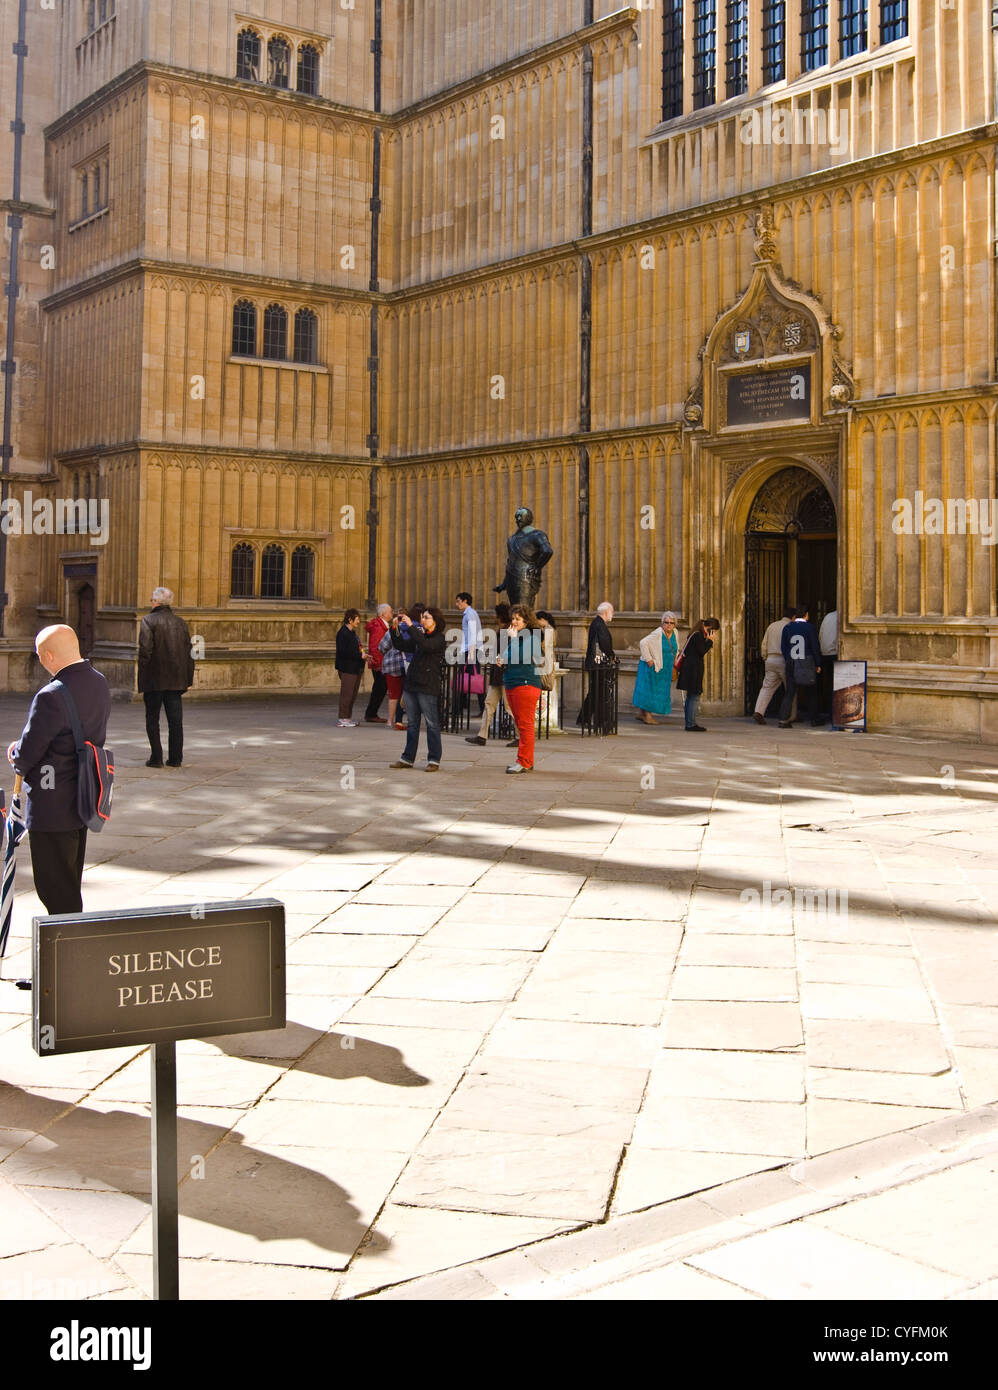 Inscrivez-vous pour demander le silence dans le grade 1 anciennes écoles Quadrangle Bodleian Library Oxford Oxfordshire England Europe Banque D'Images